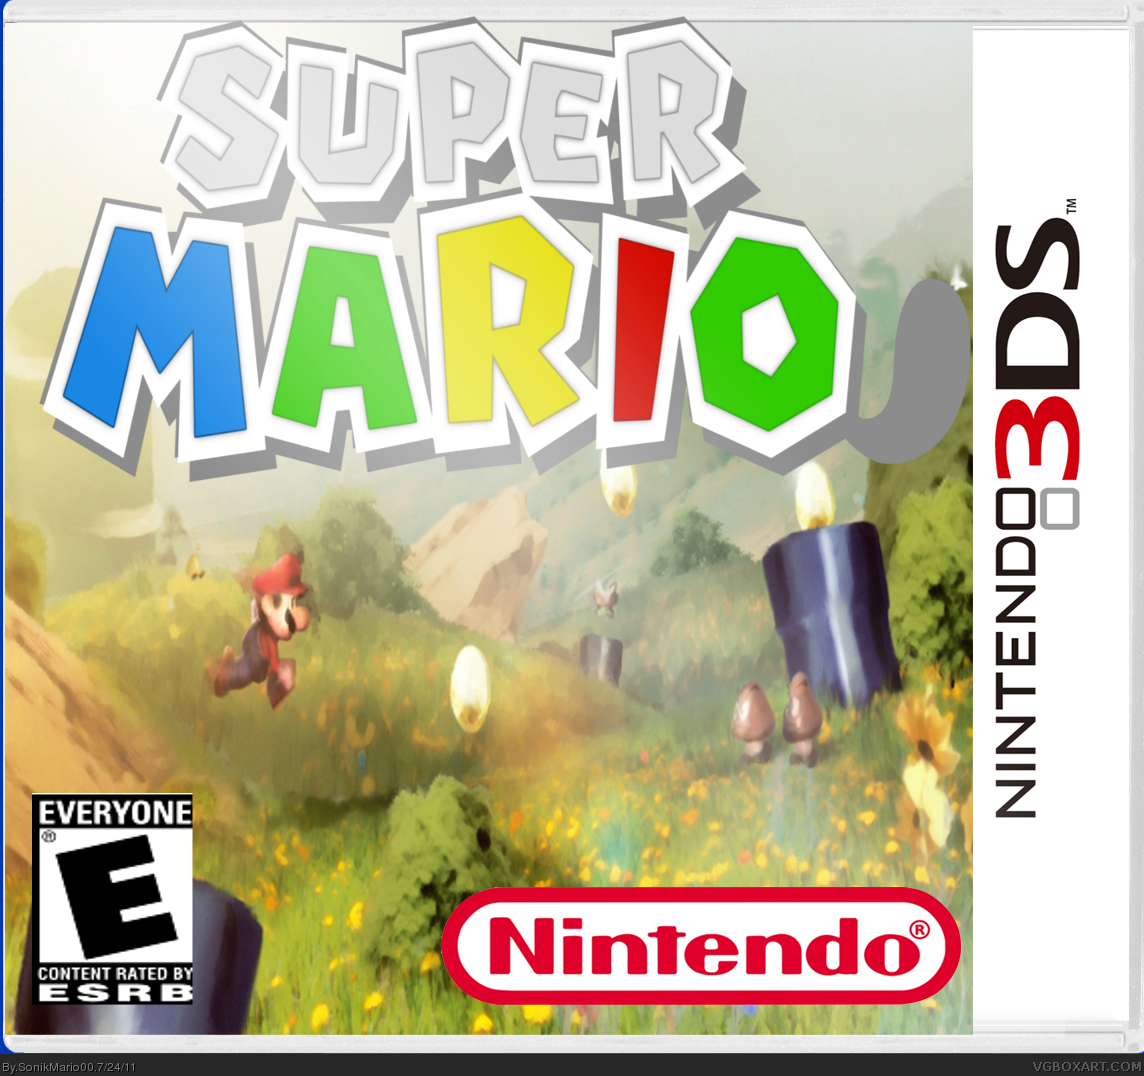 Super Mario 3D box cover